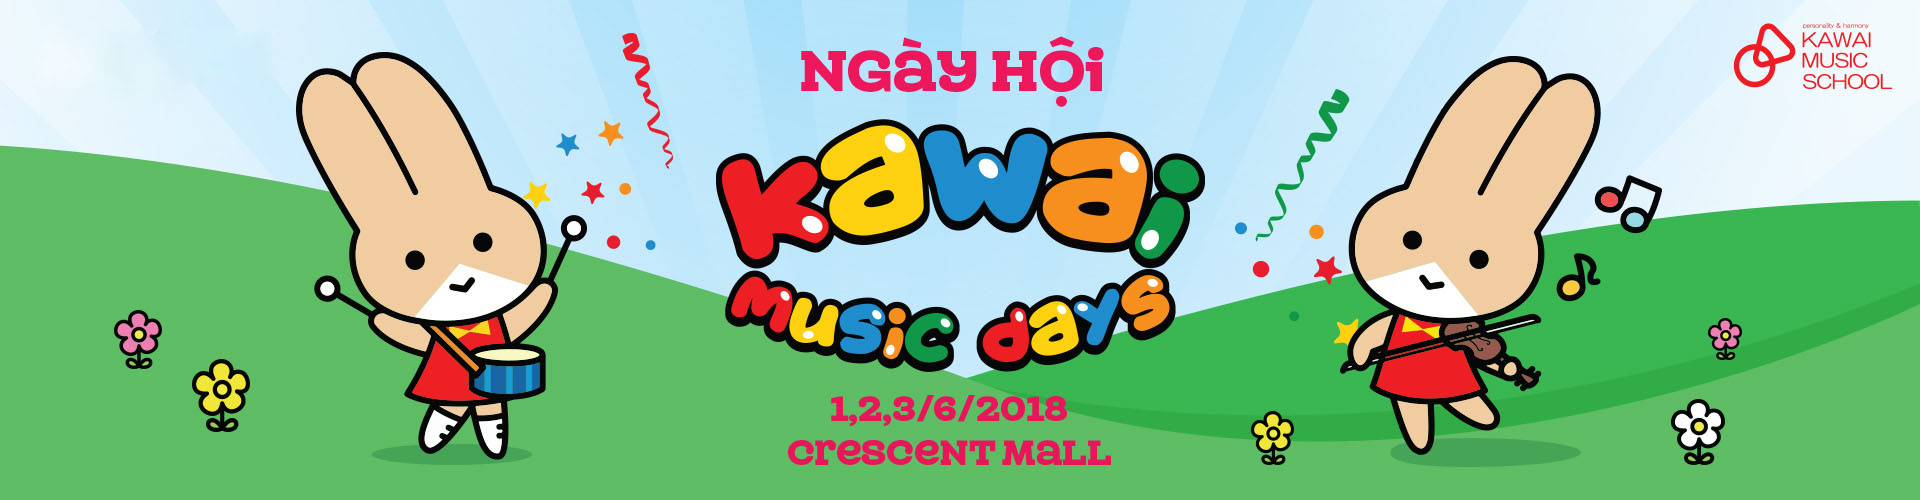 Kawai Music